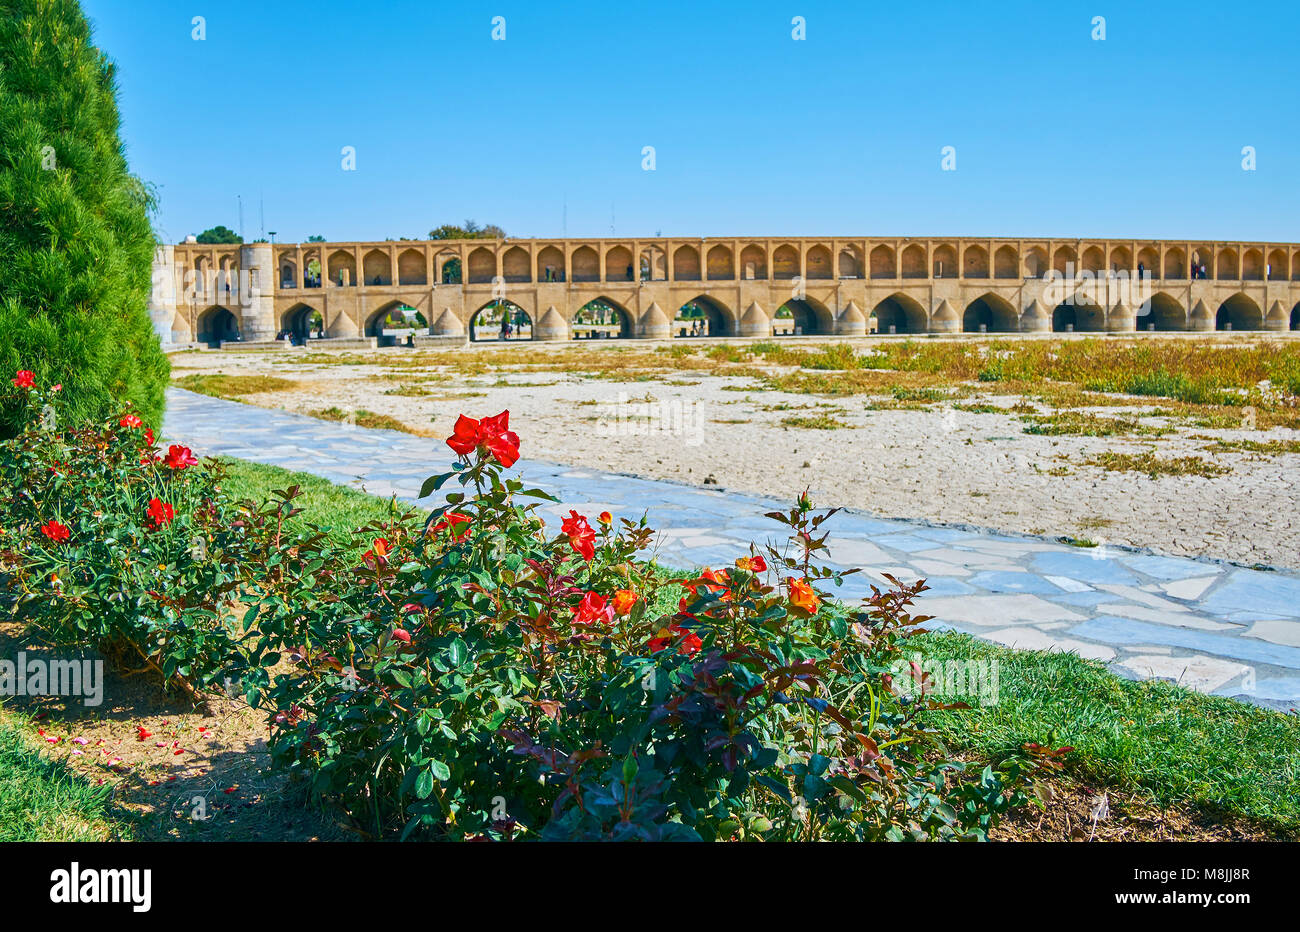 Die historische erhalten Si-o-se-pol Brücke hinter dem roten Rosenstöcken der Koudak Park, Isfahan, Iran. Stockfoto